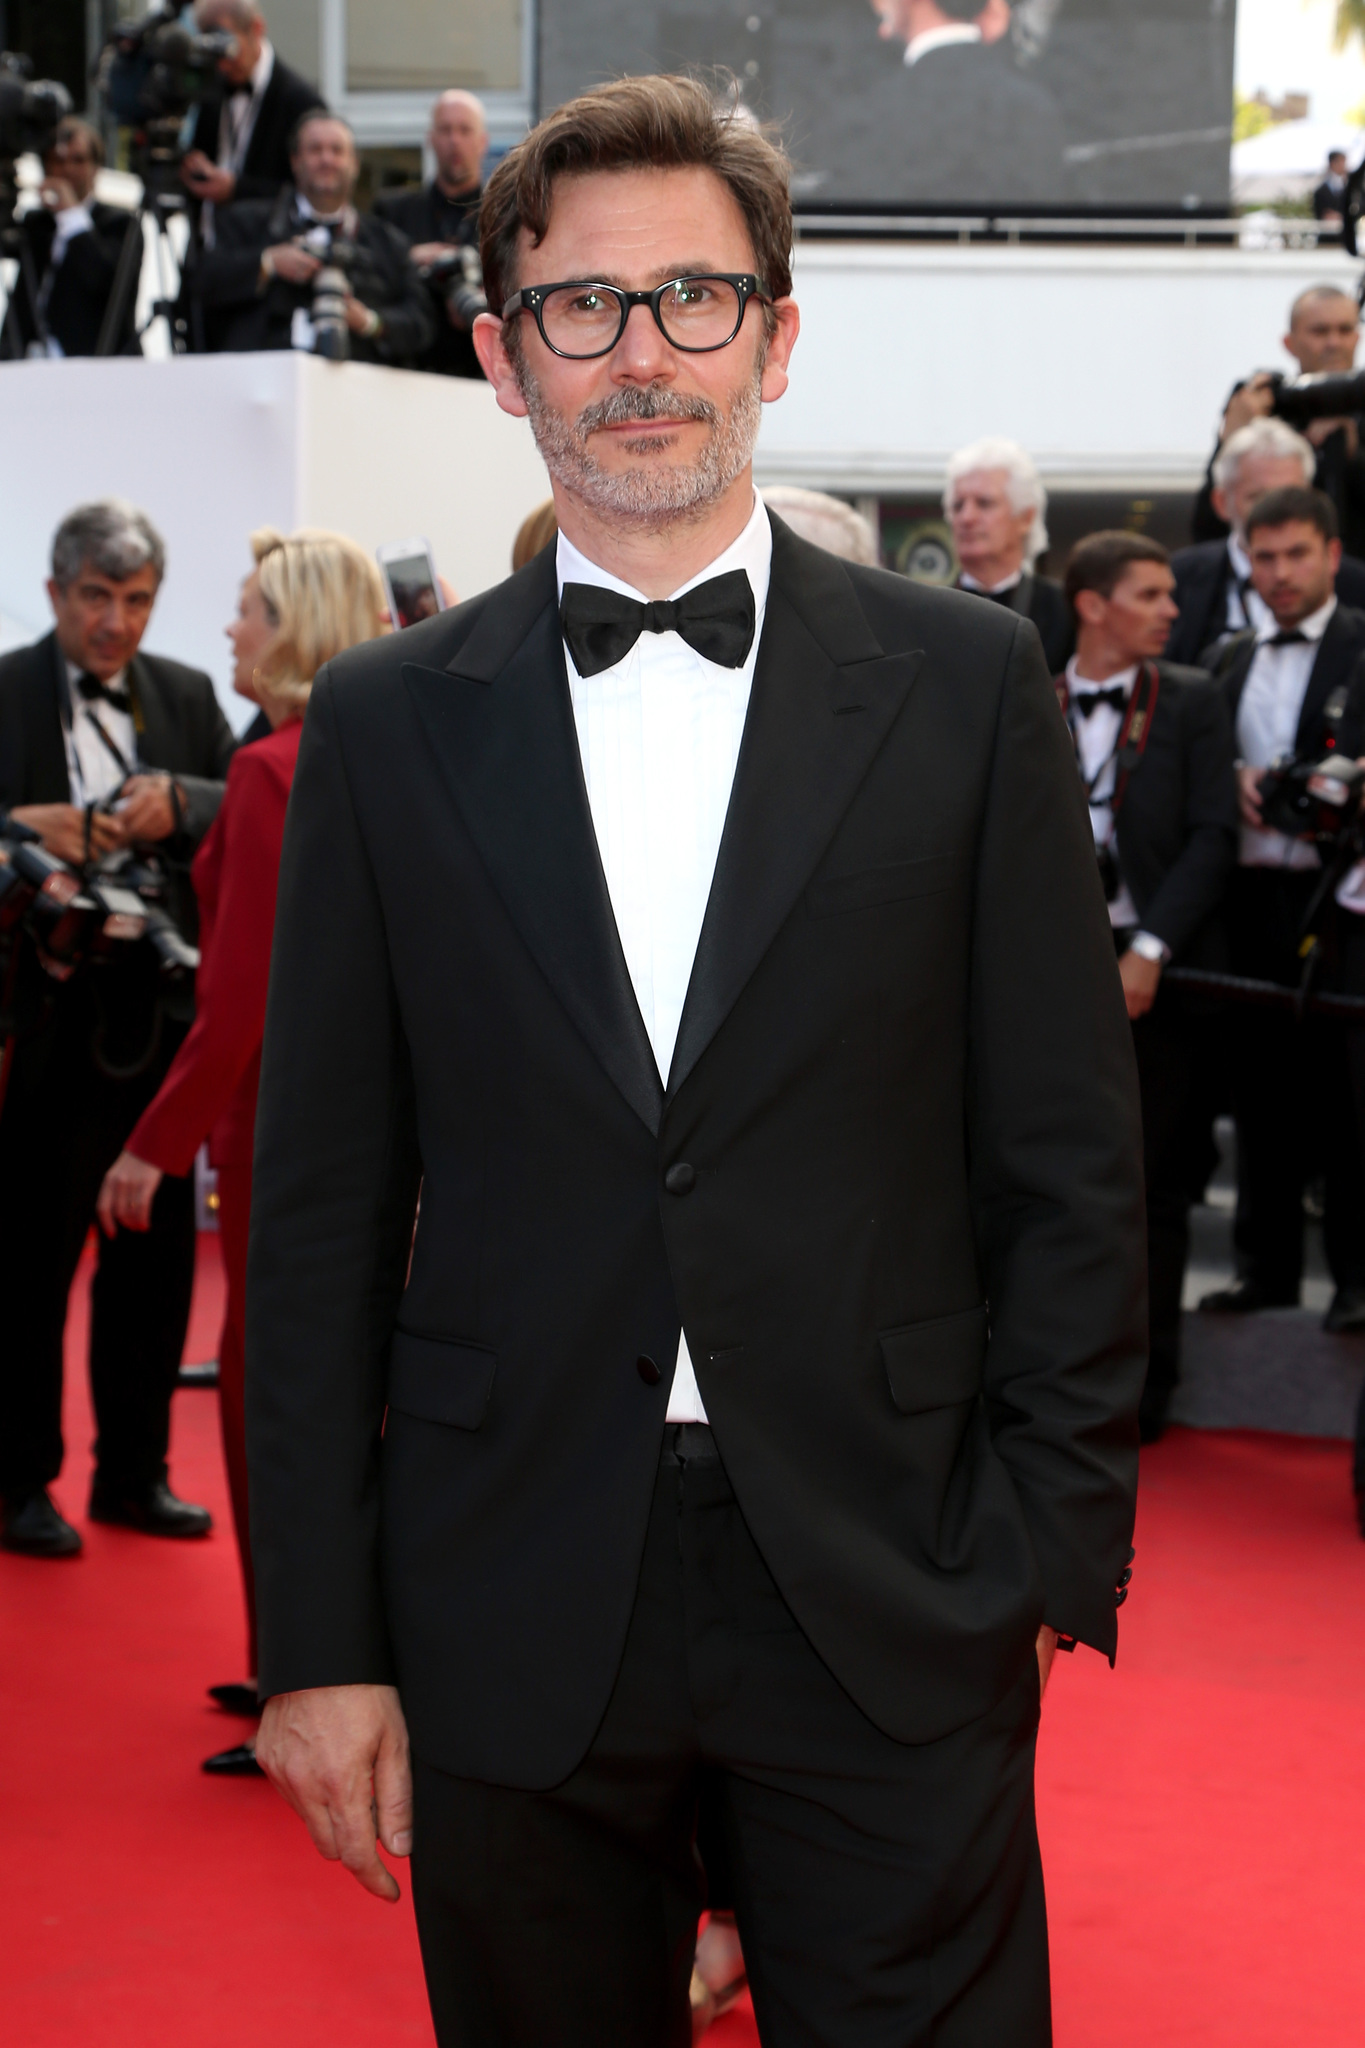 Michel Hazanavicius at event of Saint Laurent (2014)